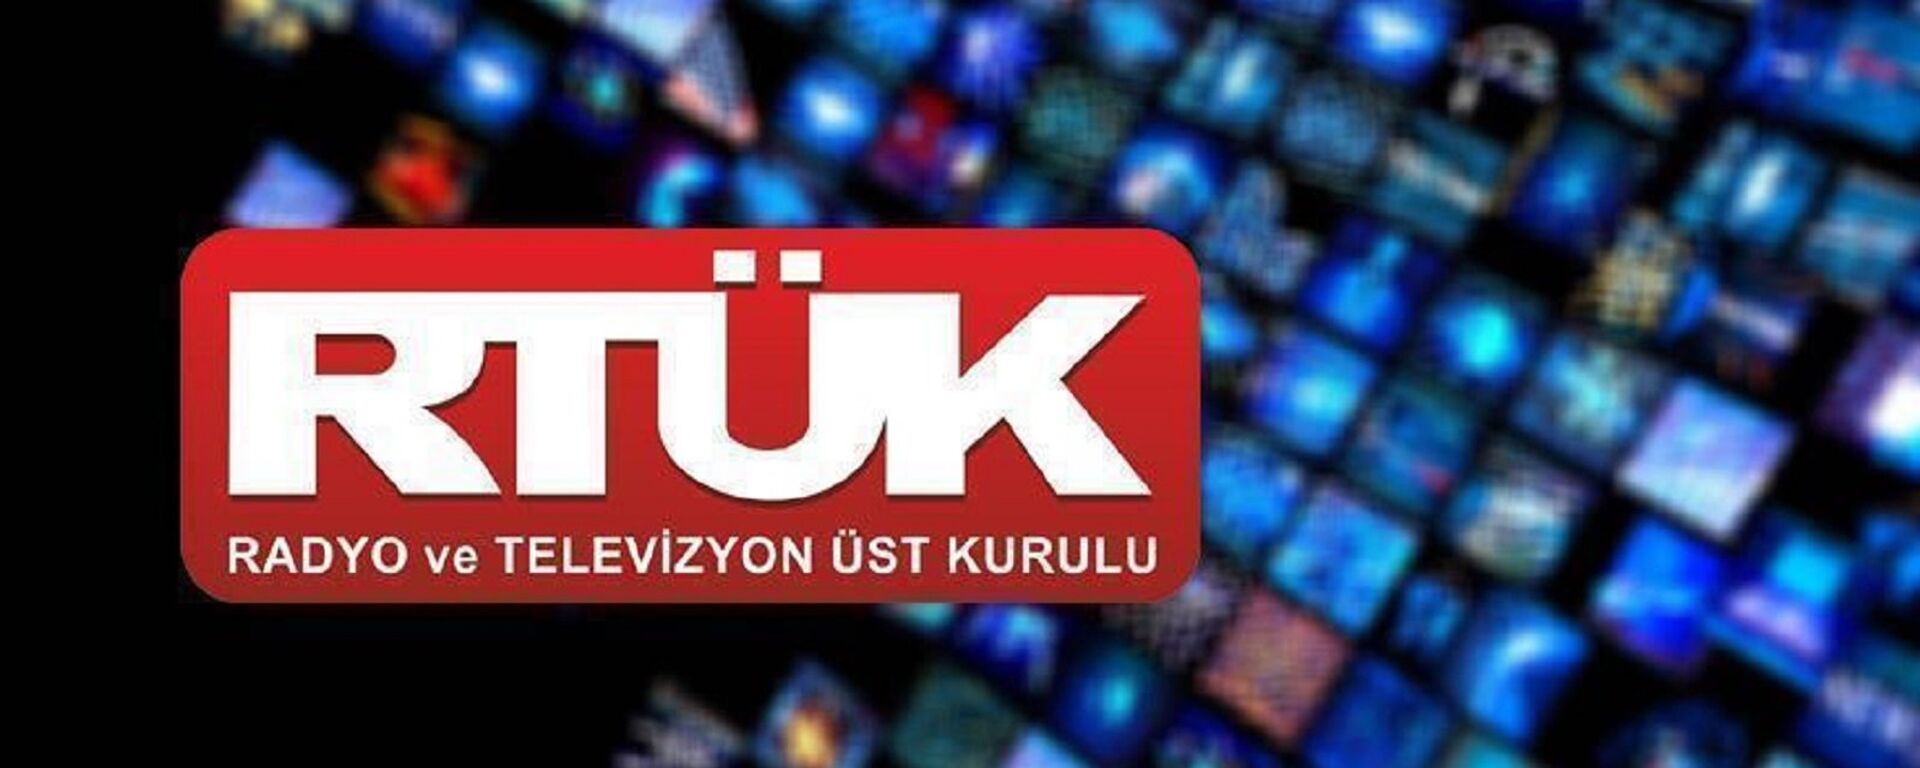 Radyo Televizyon Üst Kurulu (RTÜK)  - Sputnik Türkiye, 1920, 08.12.2021